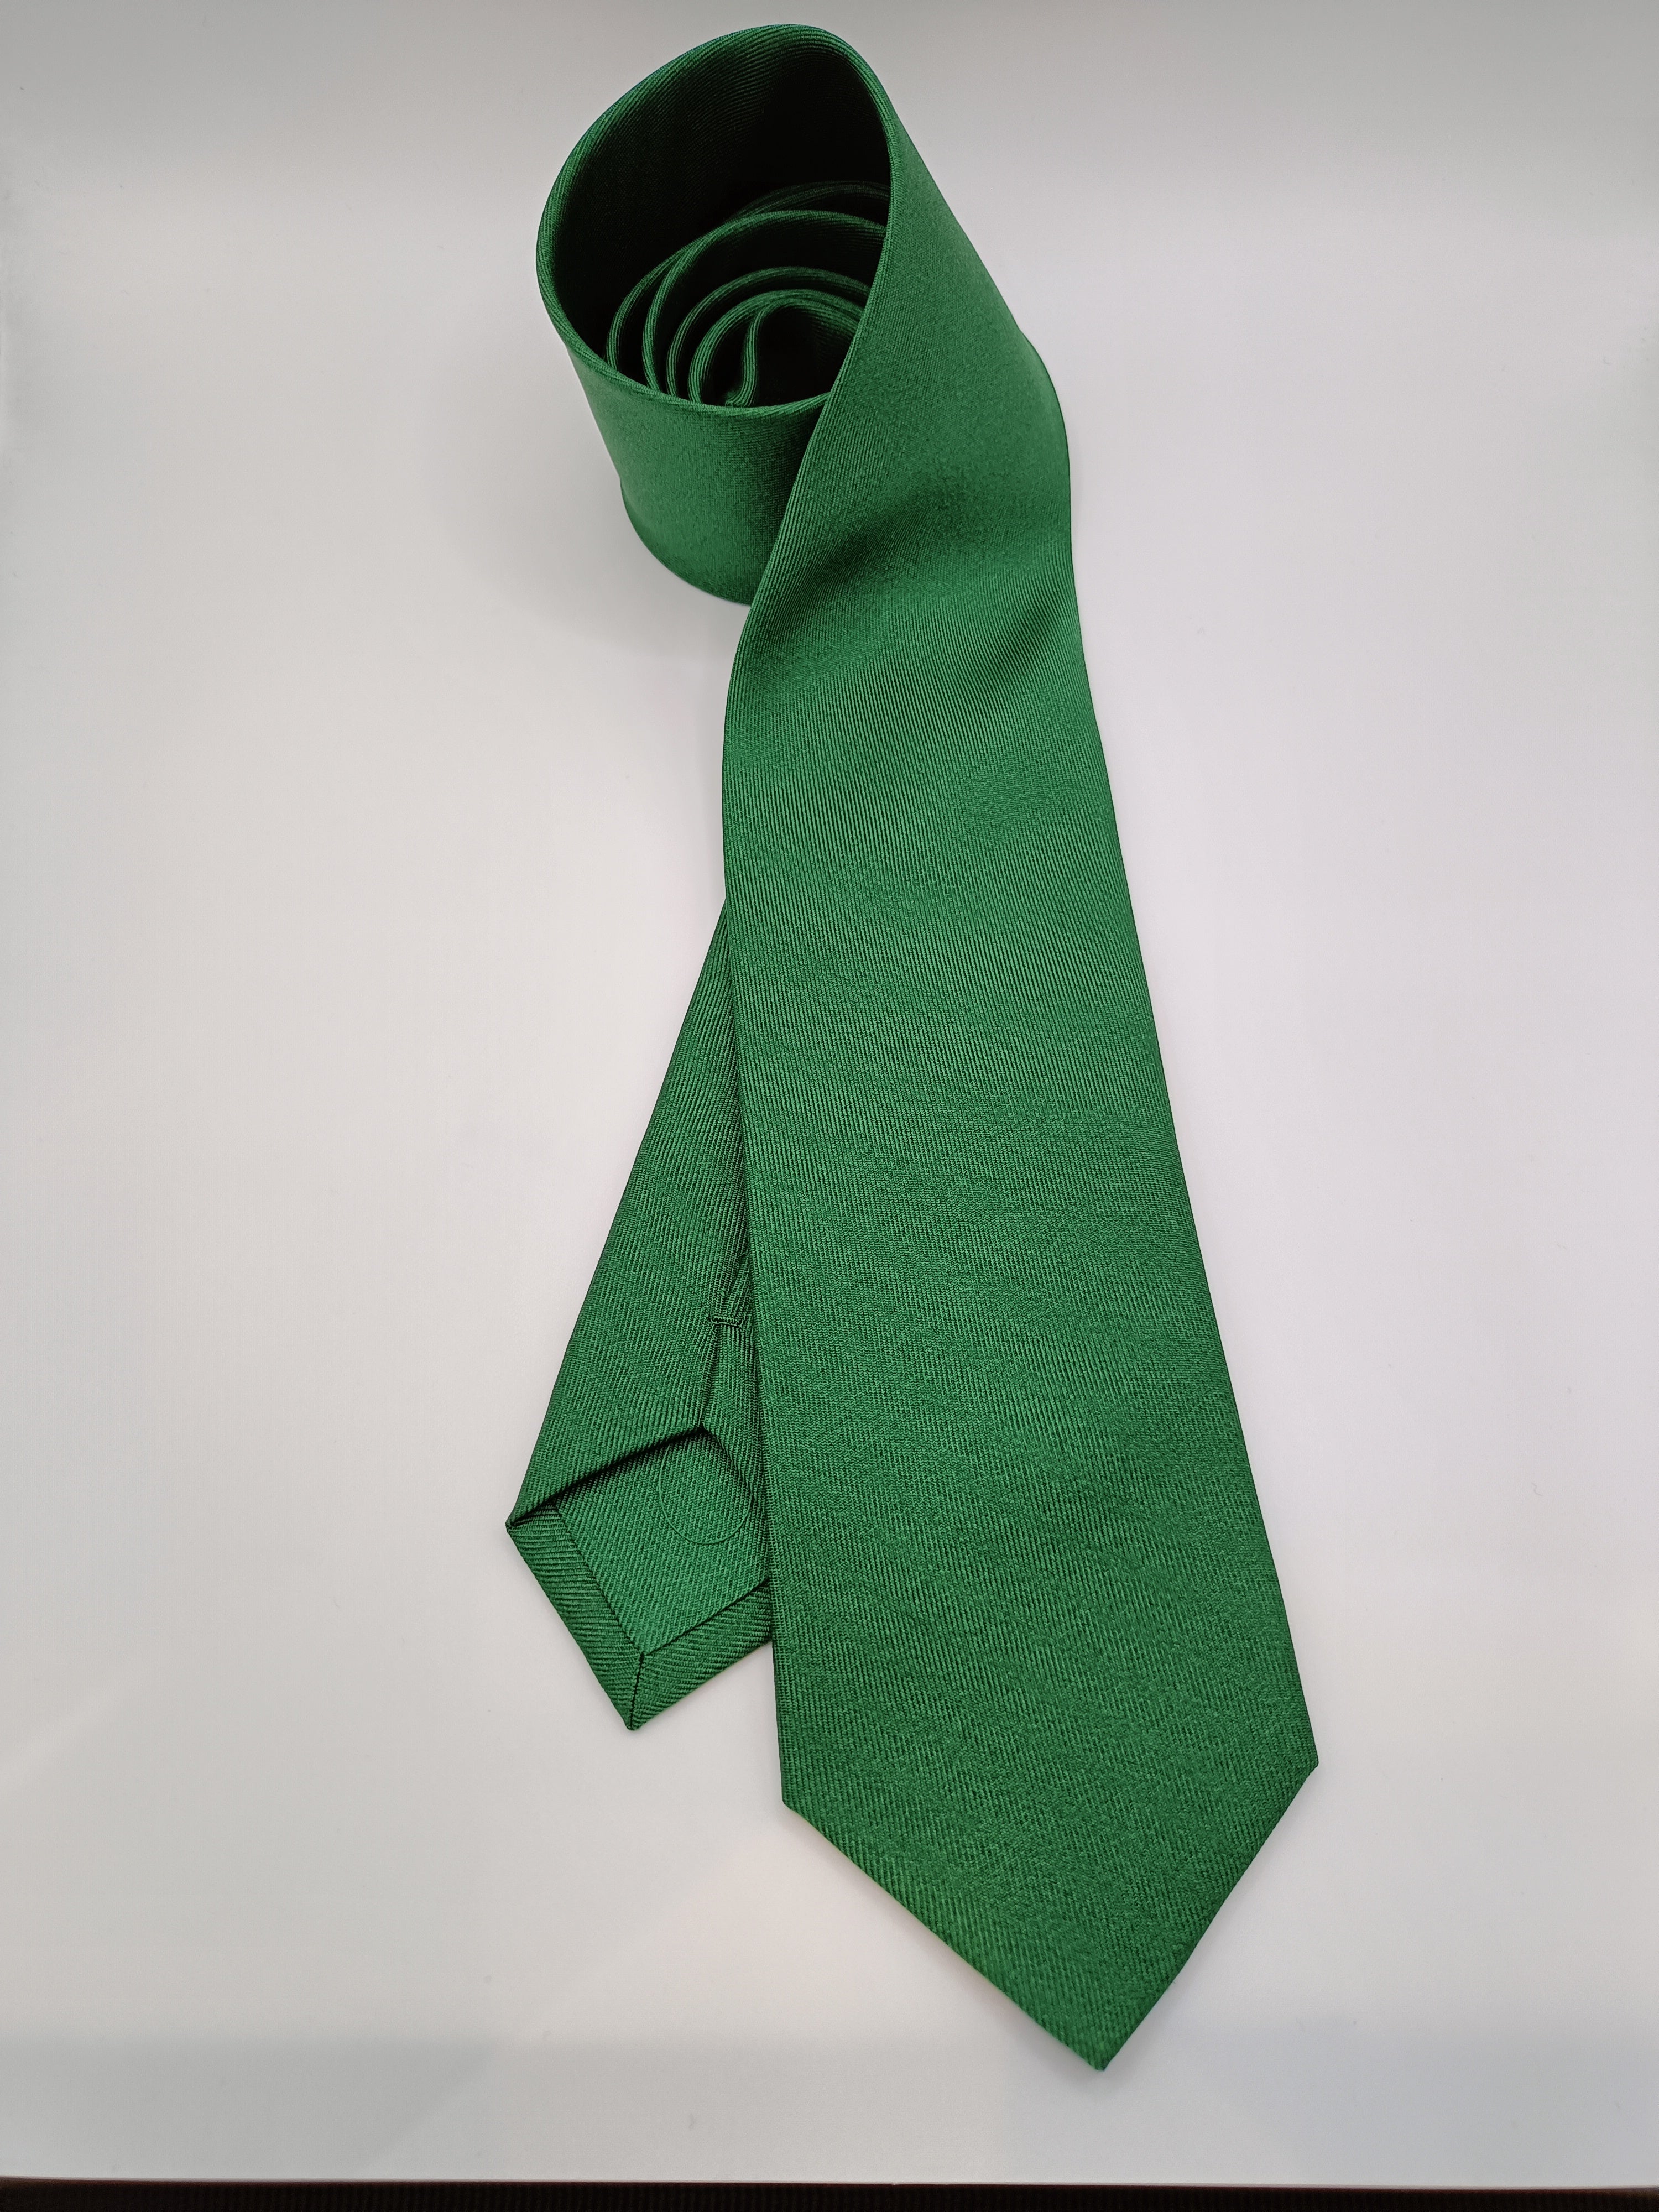 Vibrant Green Tie